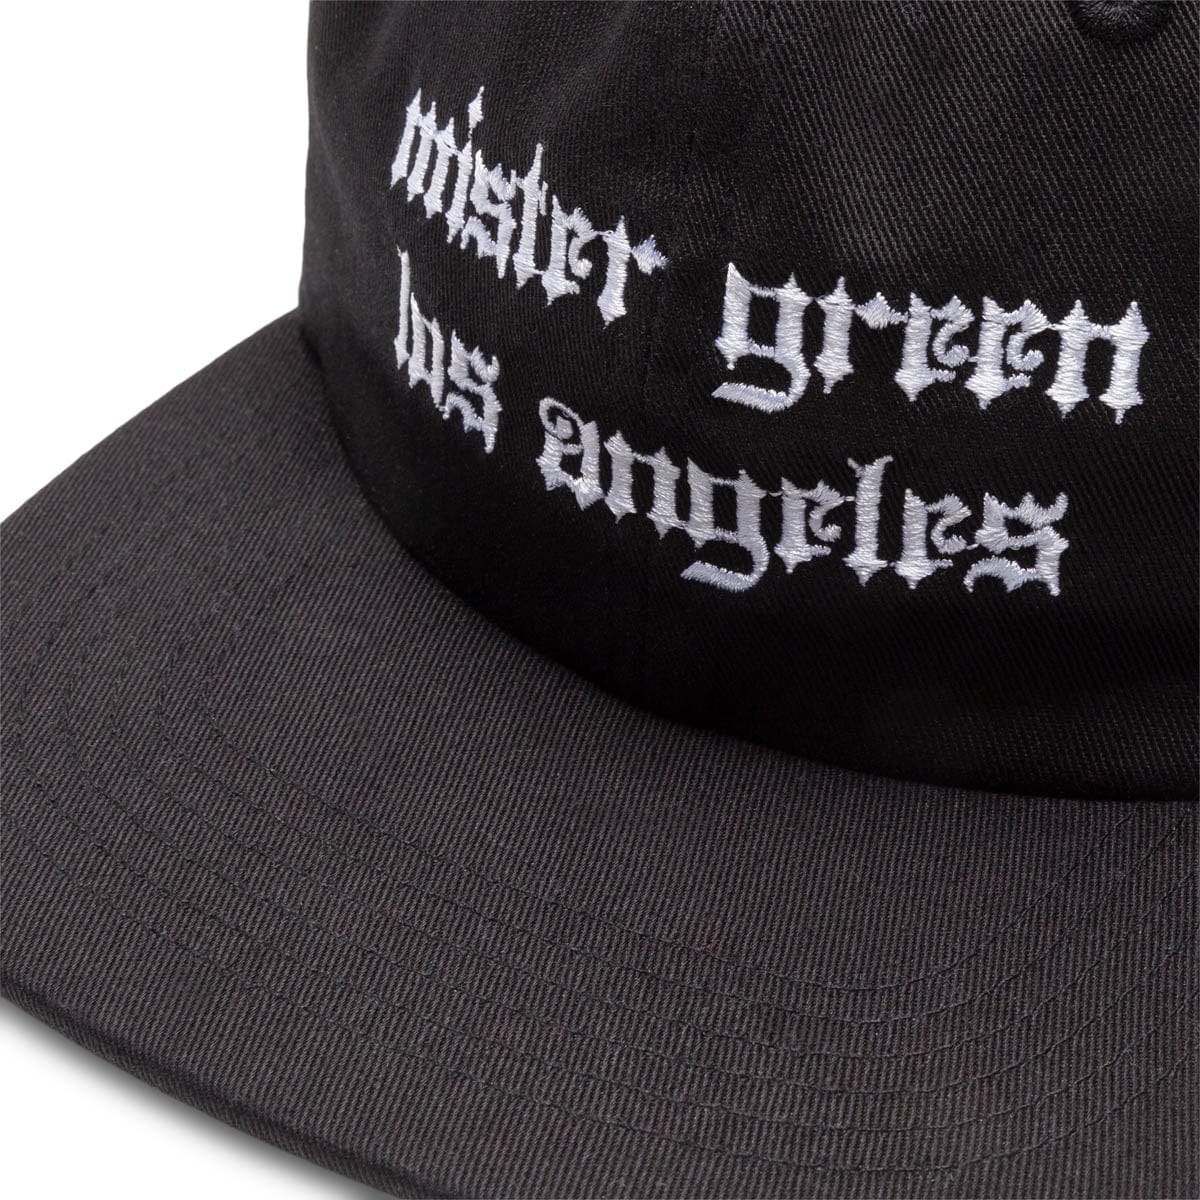 Mister Green Headwear BLACK / O/S LA CAP